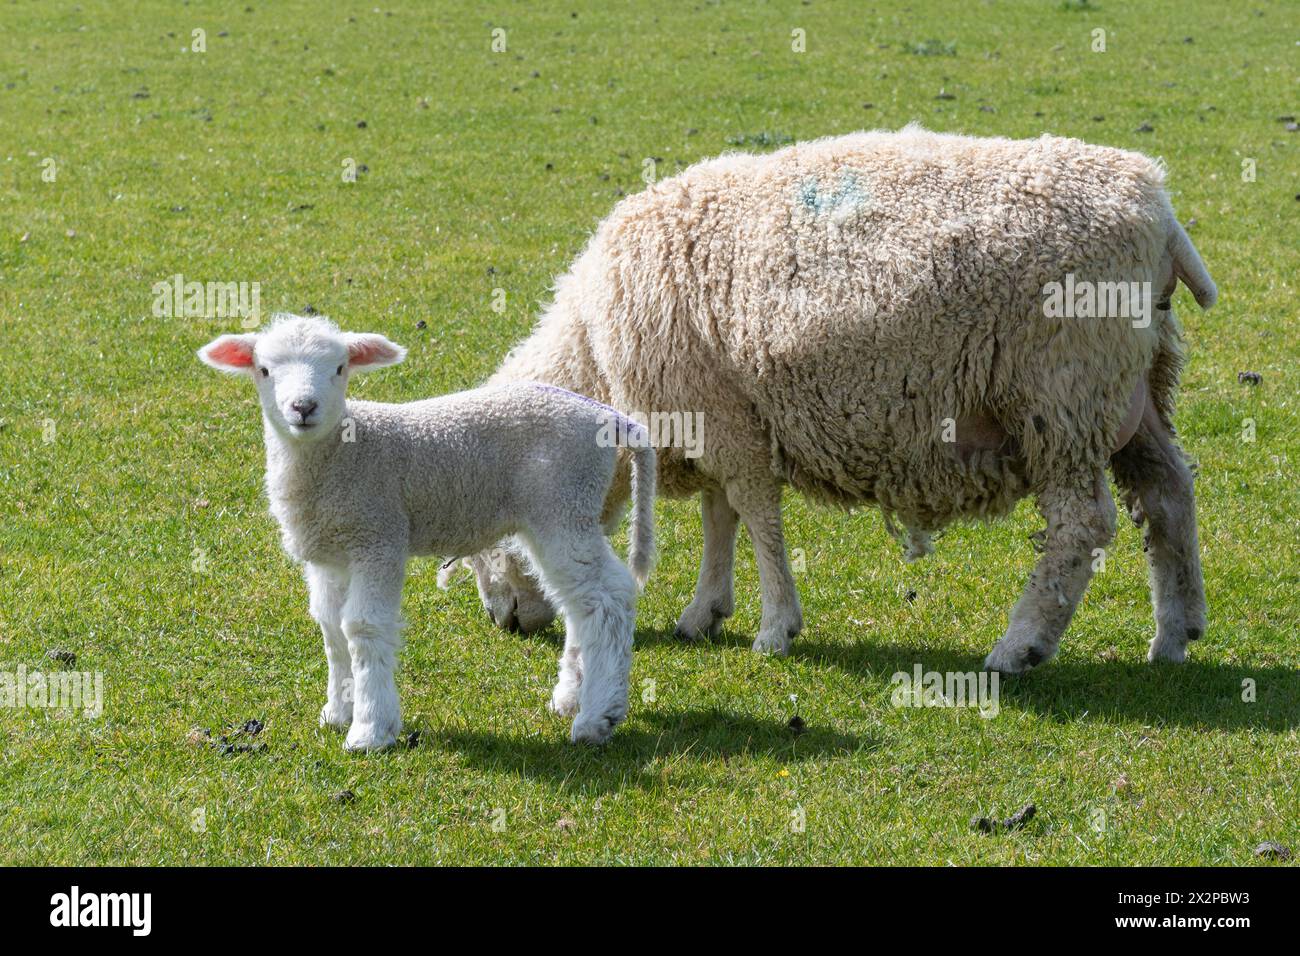 Jeune agneau debout à côté de brebis mère en pâturage au printemps, Angleterre, Royaume-Uni, animal bébé mignon Banque D'Images